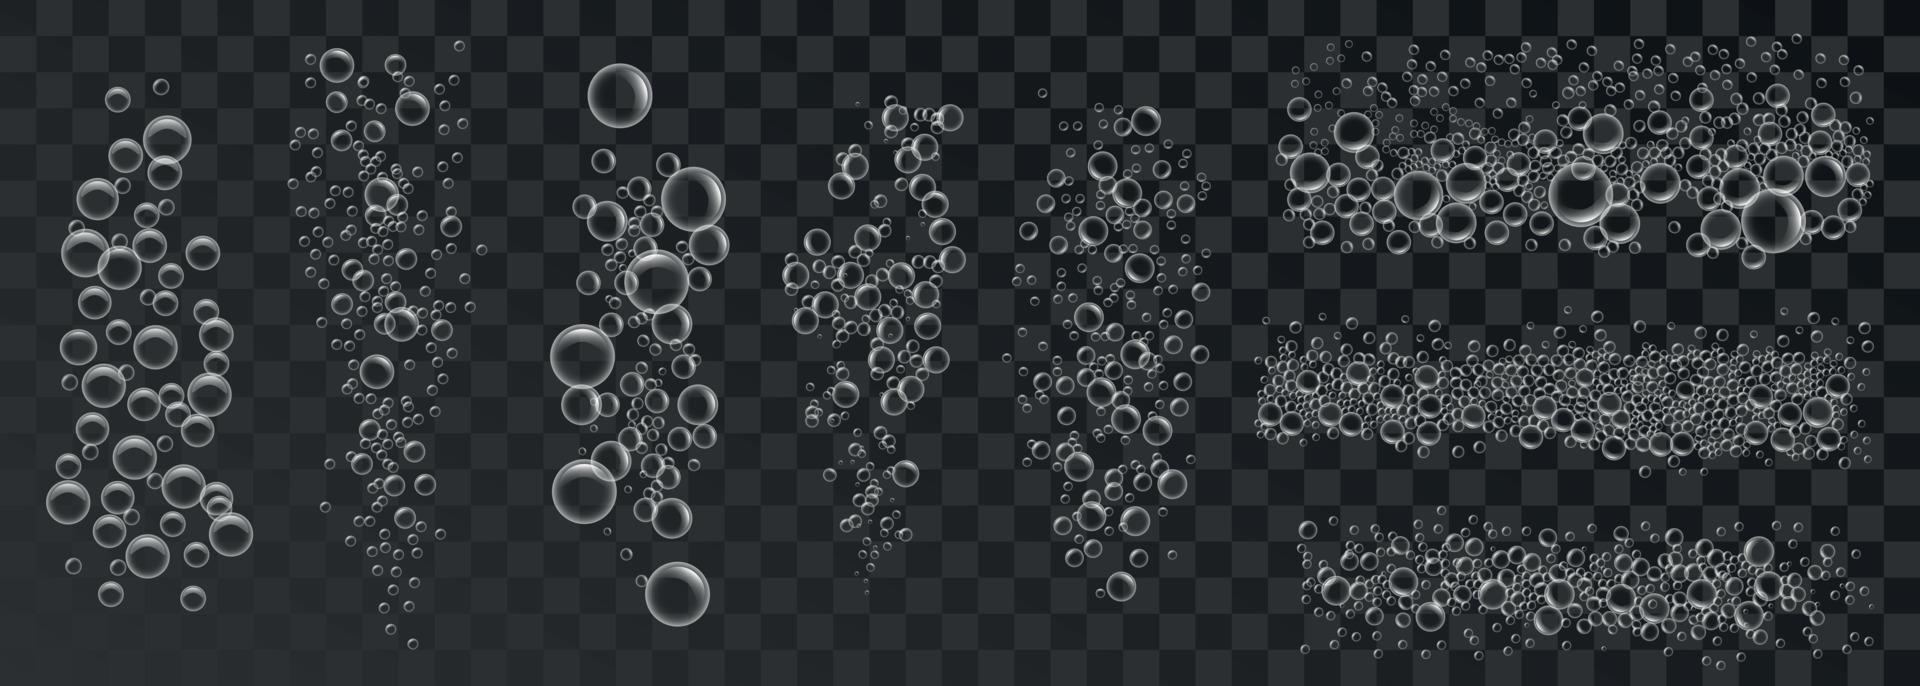 fondo de concepto de conjunto de burbujas de espuma, estilo realista vector